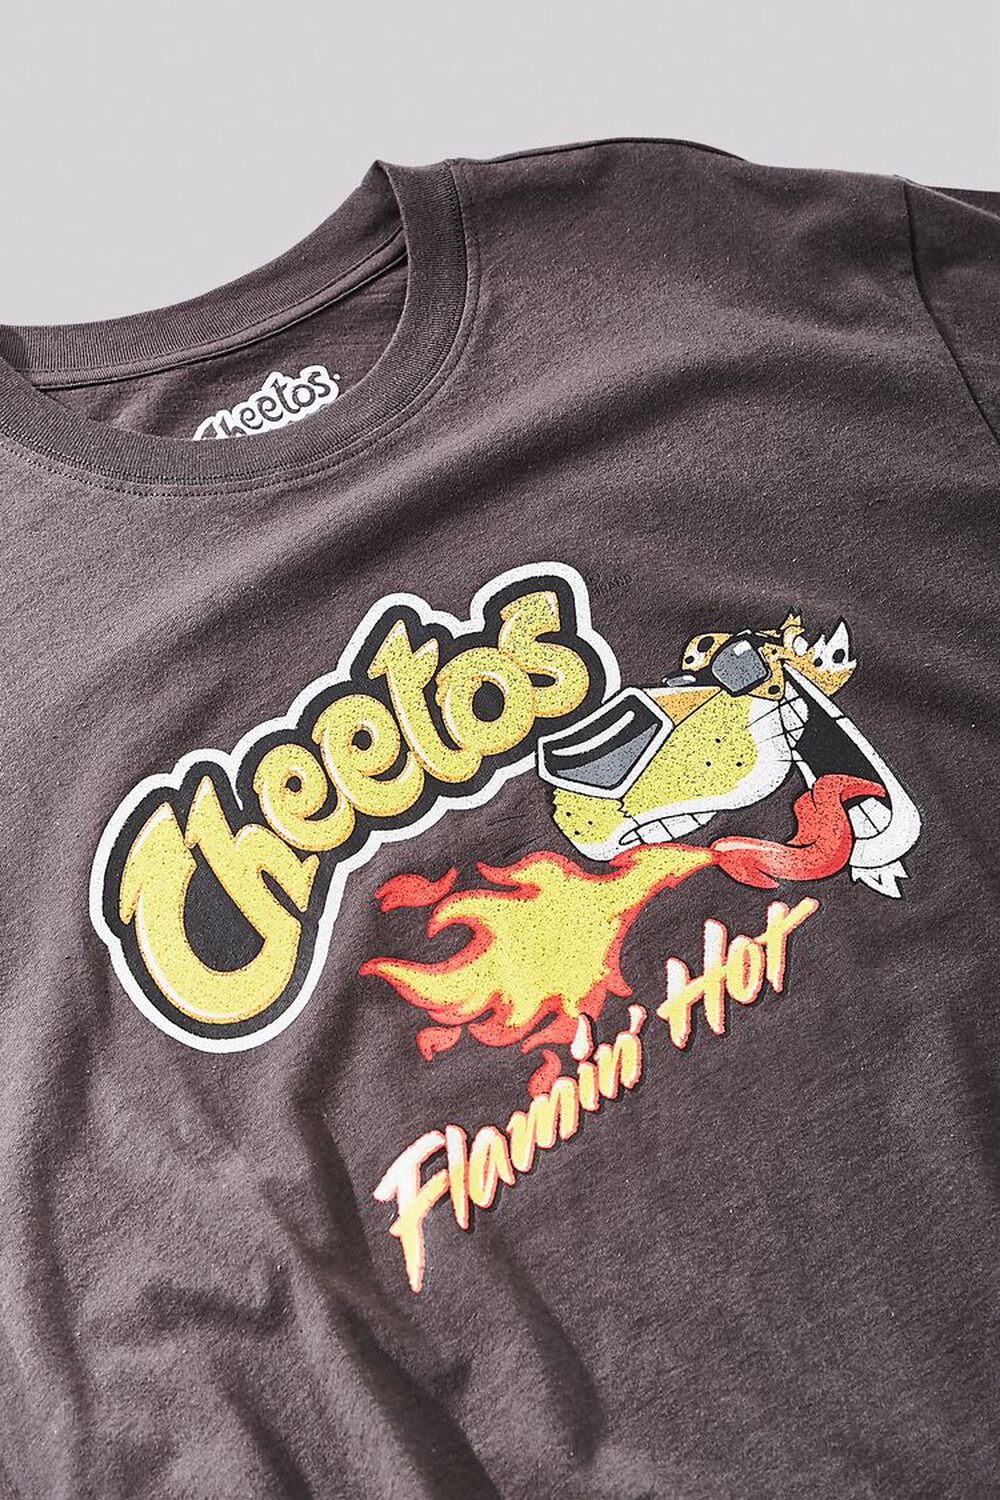 Tee Luv Flamin' Hot Cheetos Chester Cheetah T-Shirt - Black Small